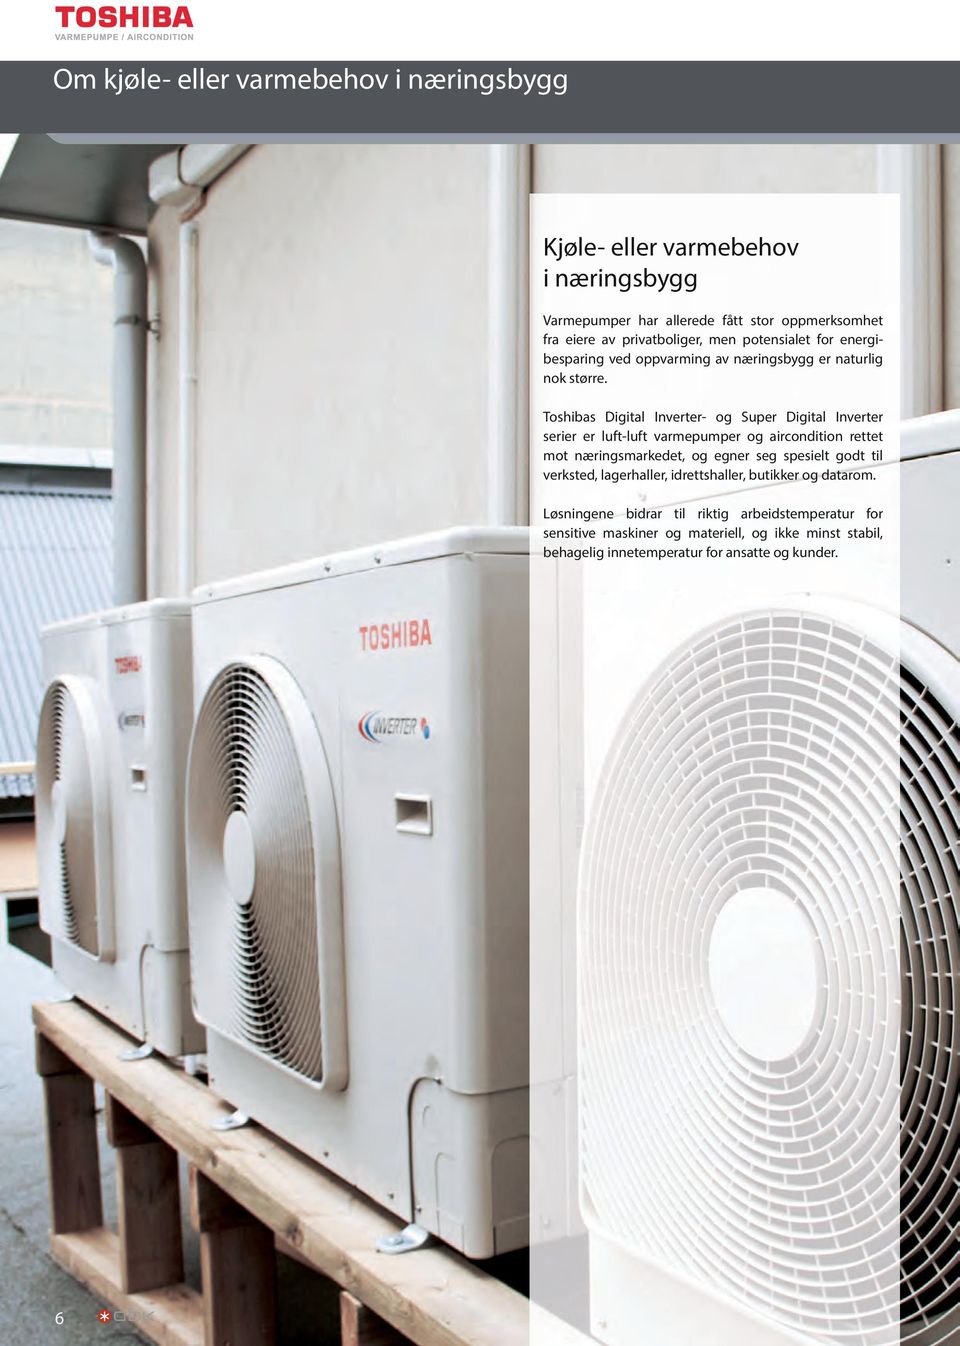 Toshibas Digital Inverter- og Super Digital Inverter serier er luft-luft varmepumper og aircondition rettet mot næringsmarkedet, og egner seg spesielt